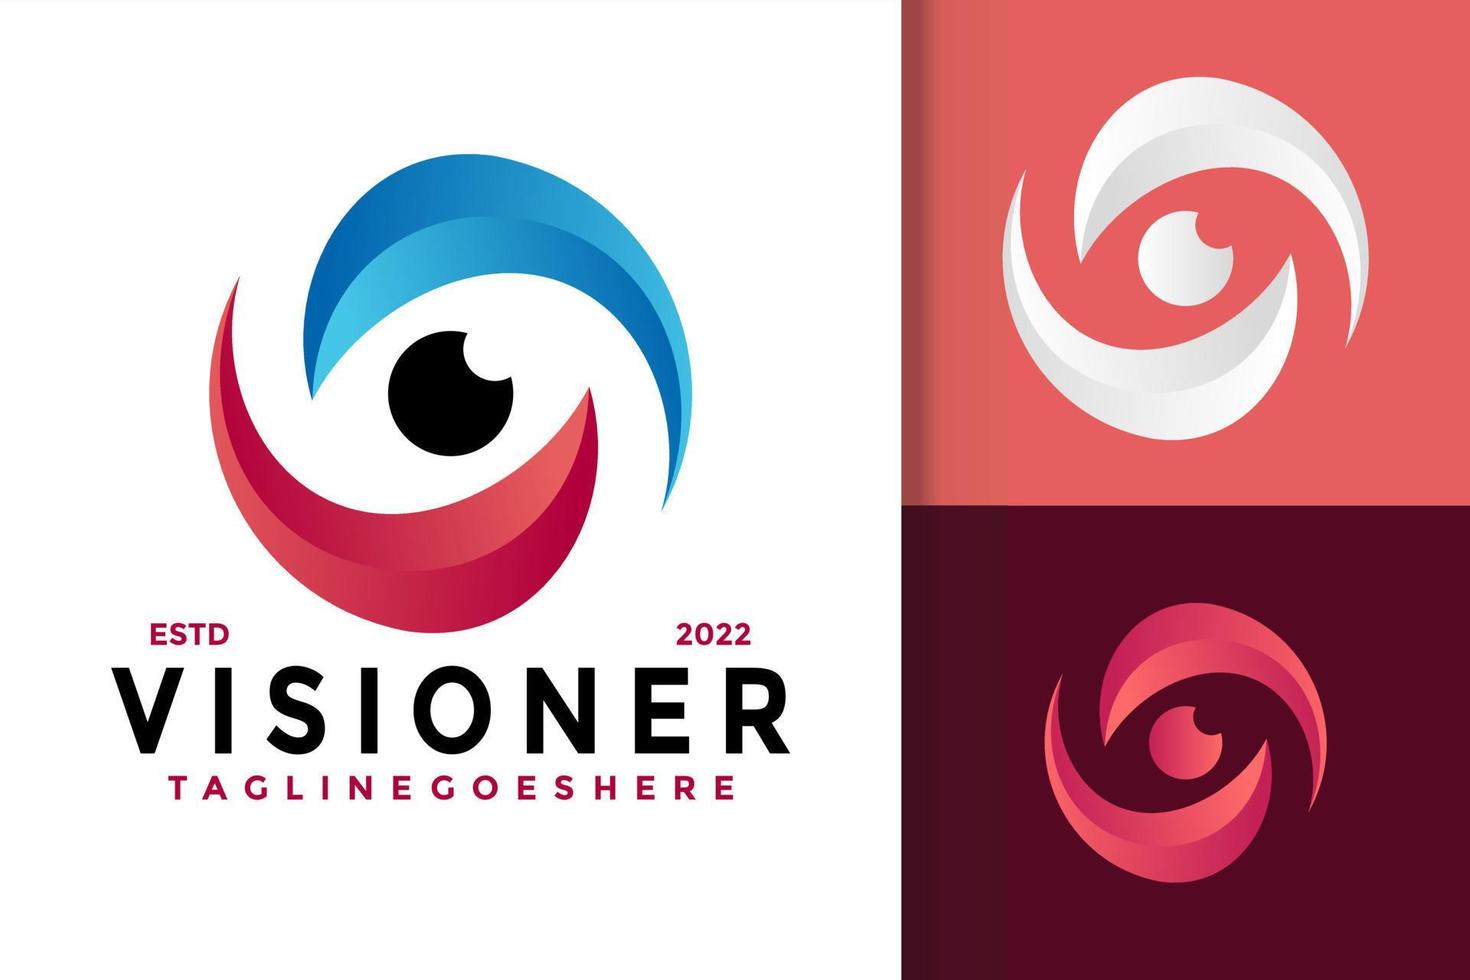 diseño de logotipo de visión ocular, vector de logotipos de identidad de marca, logotipo moderno, plantilla de ilustración vectorial de diseños de logotipos